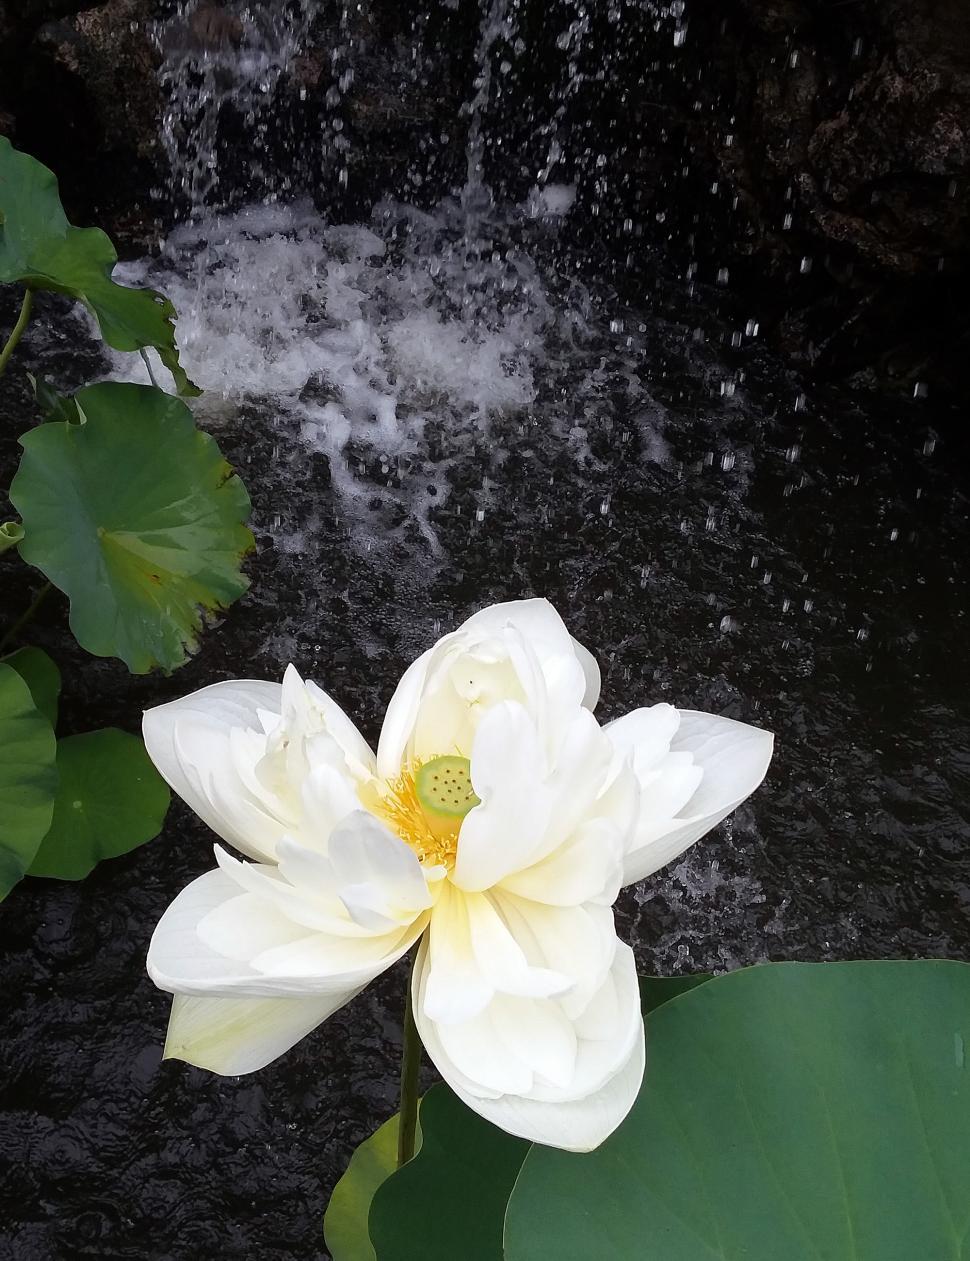 Free Image of White Lotus Flower 